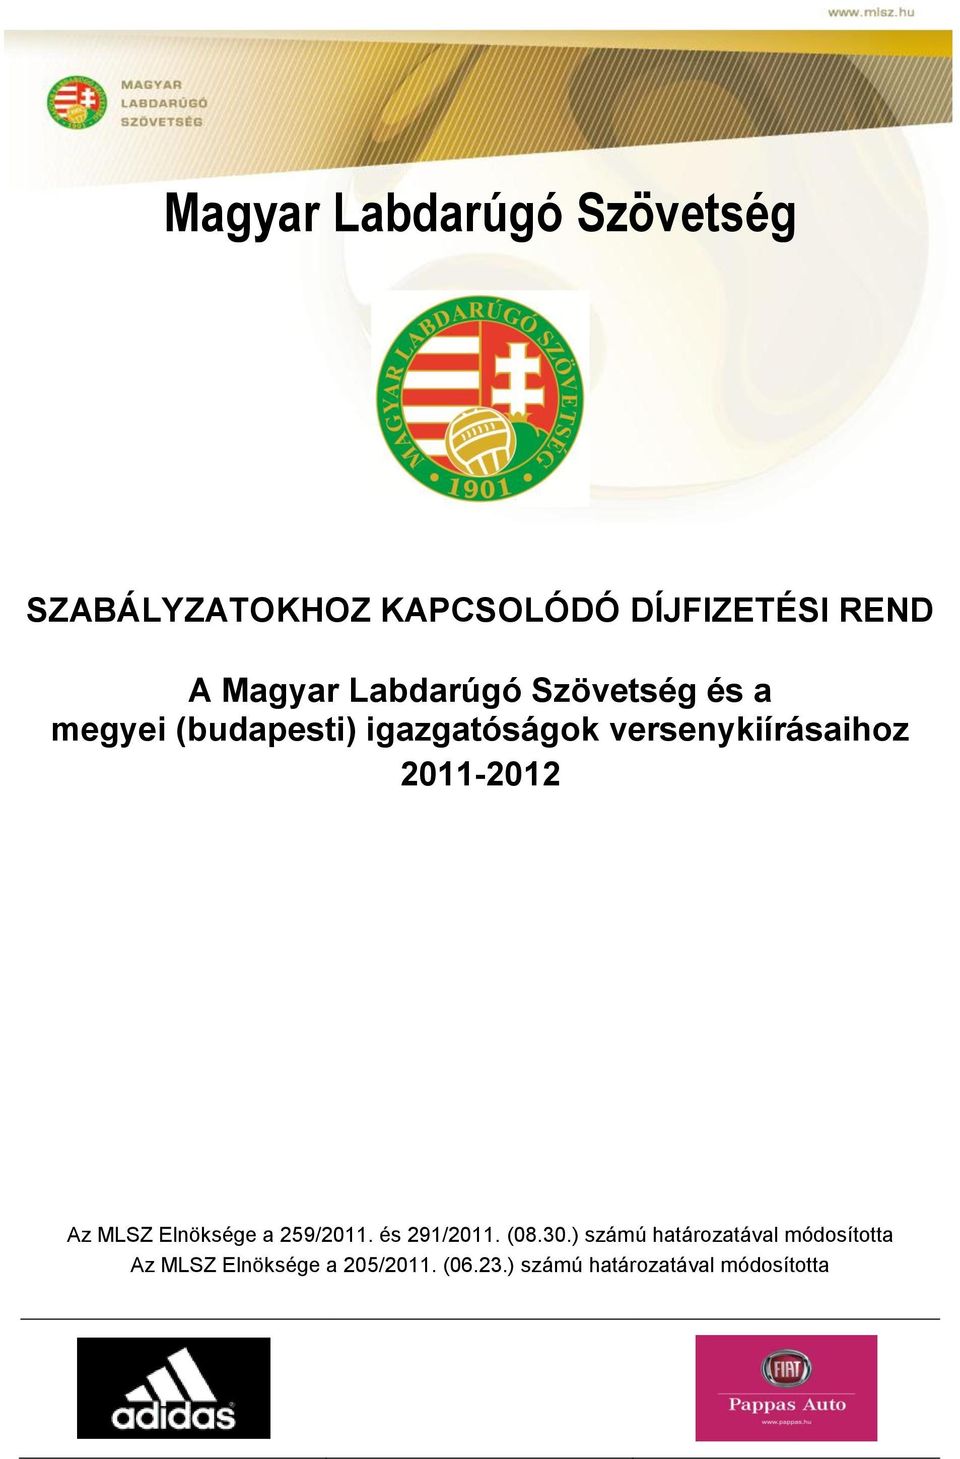 2011-2012 Az MLSZ Elnöksége a 259/2011. és 291/2011. (08.30.